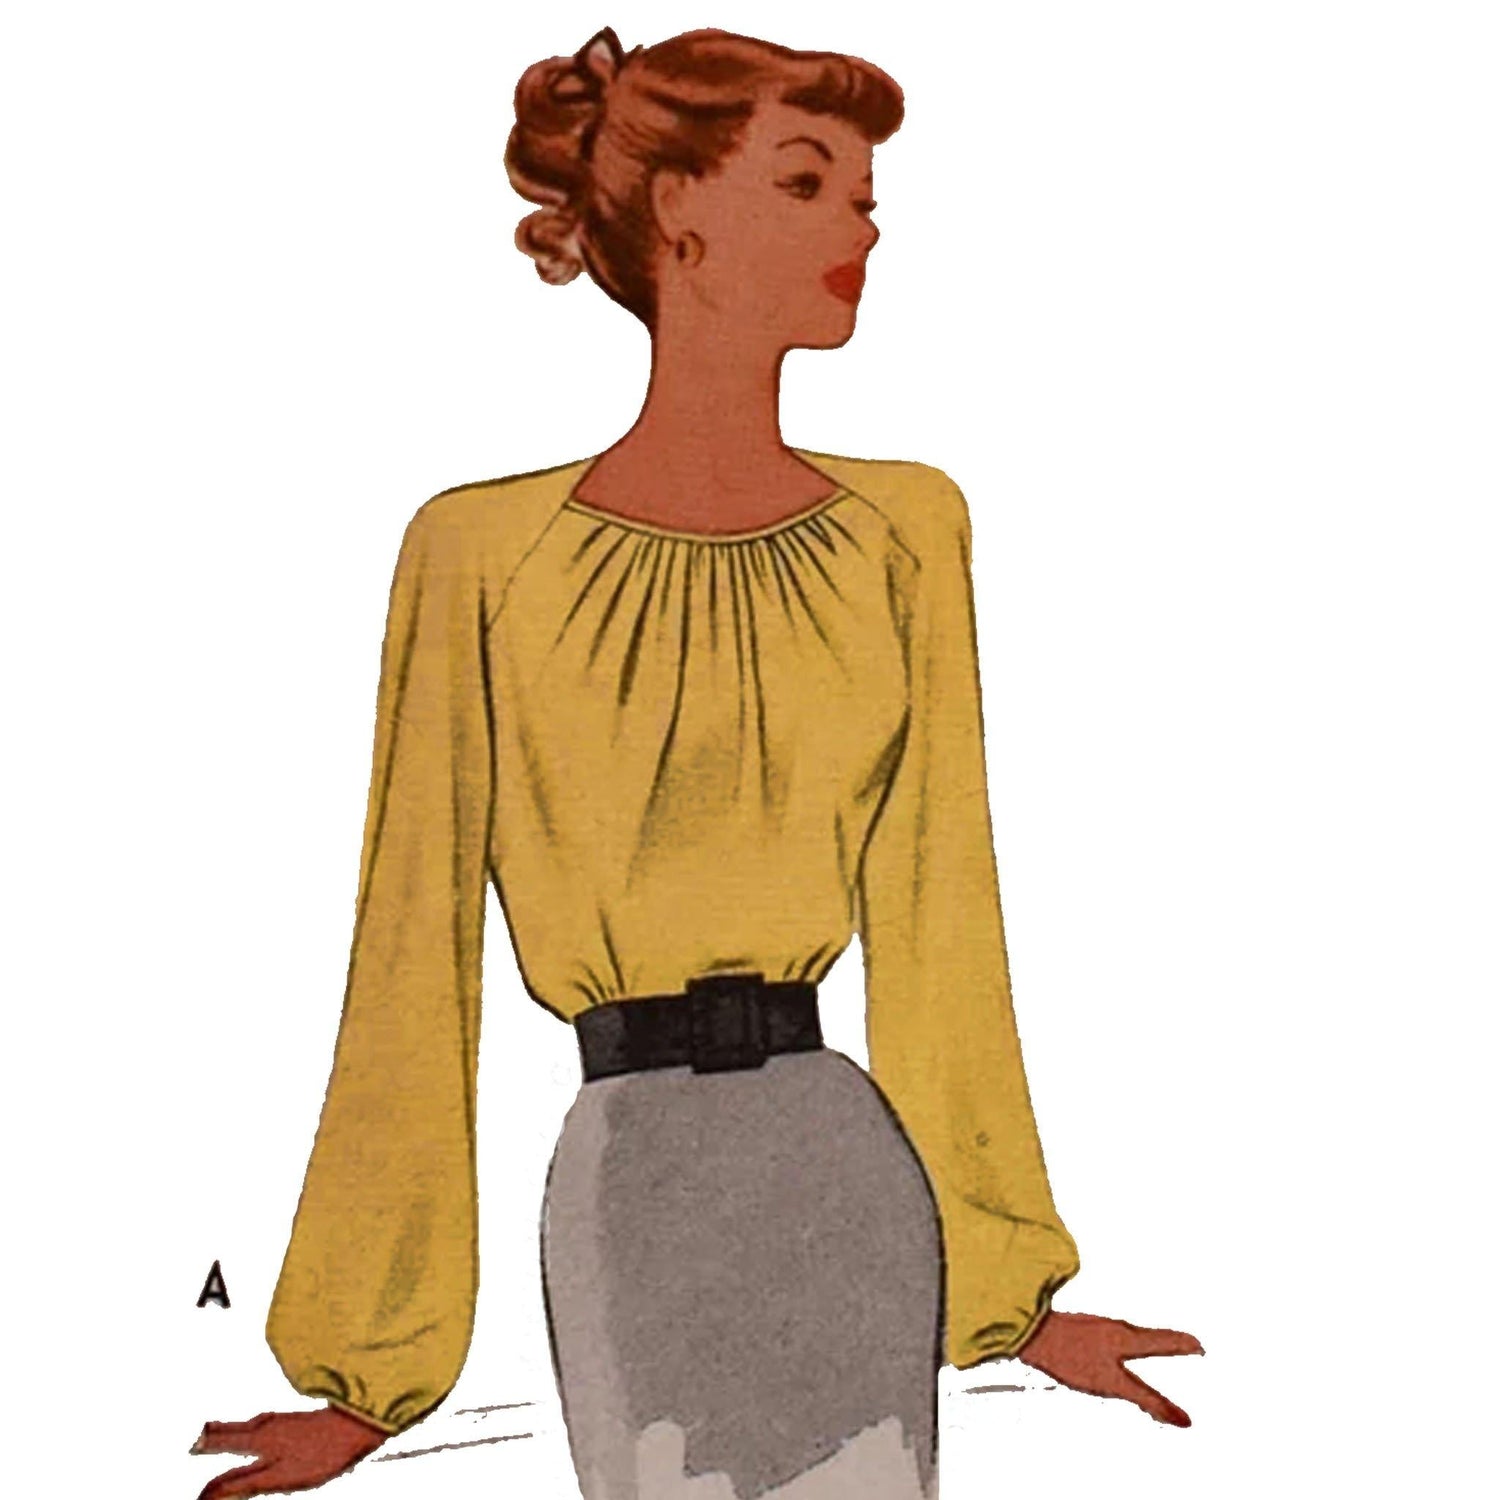 A woman wearing a blouse.